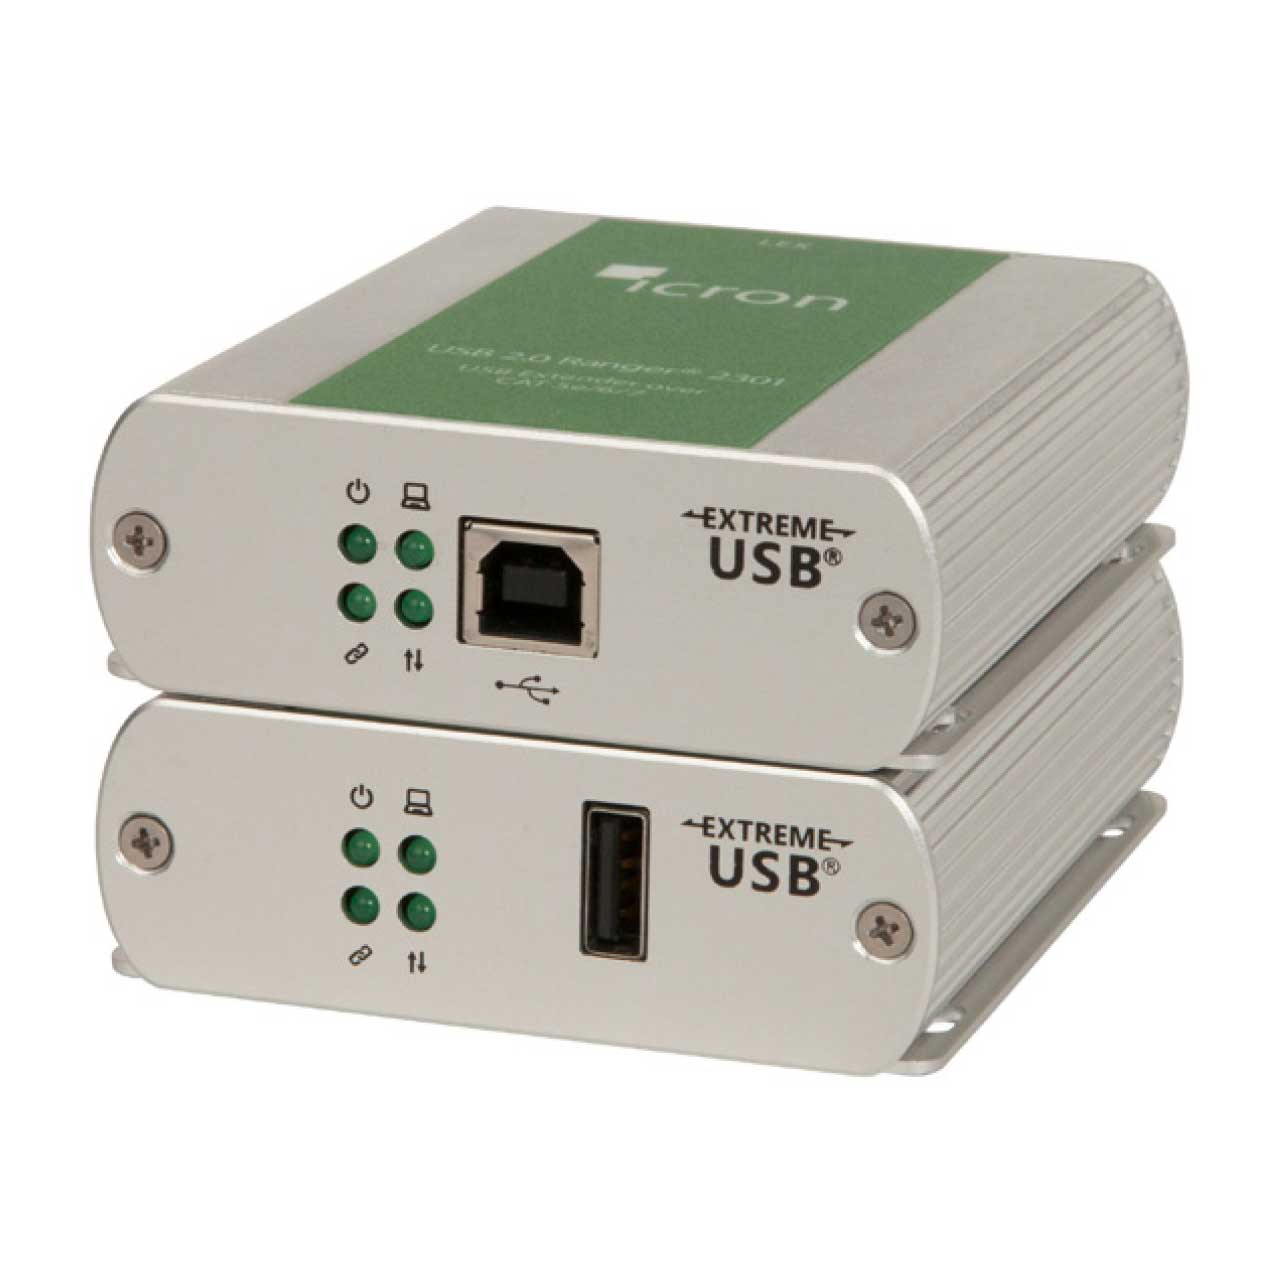 Icron 2301GE-LAN 1-port USB 2.0 Ethernet LAN Extender System